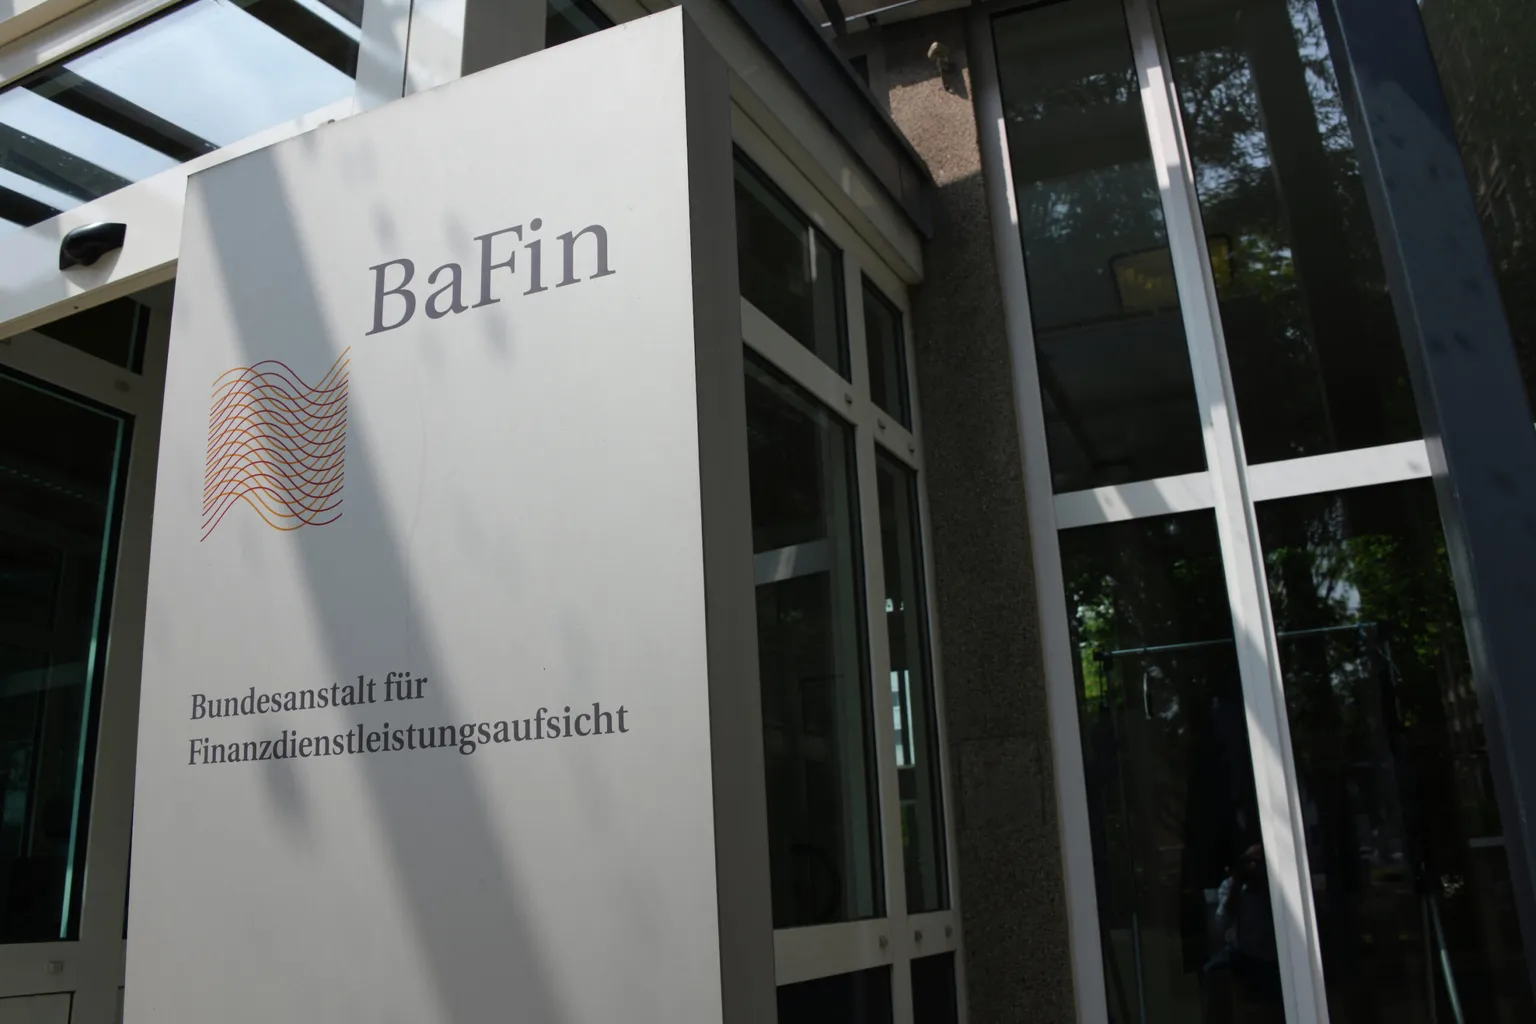 BaFin headquarters in Bonn, Germany. Image: Shutterstock